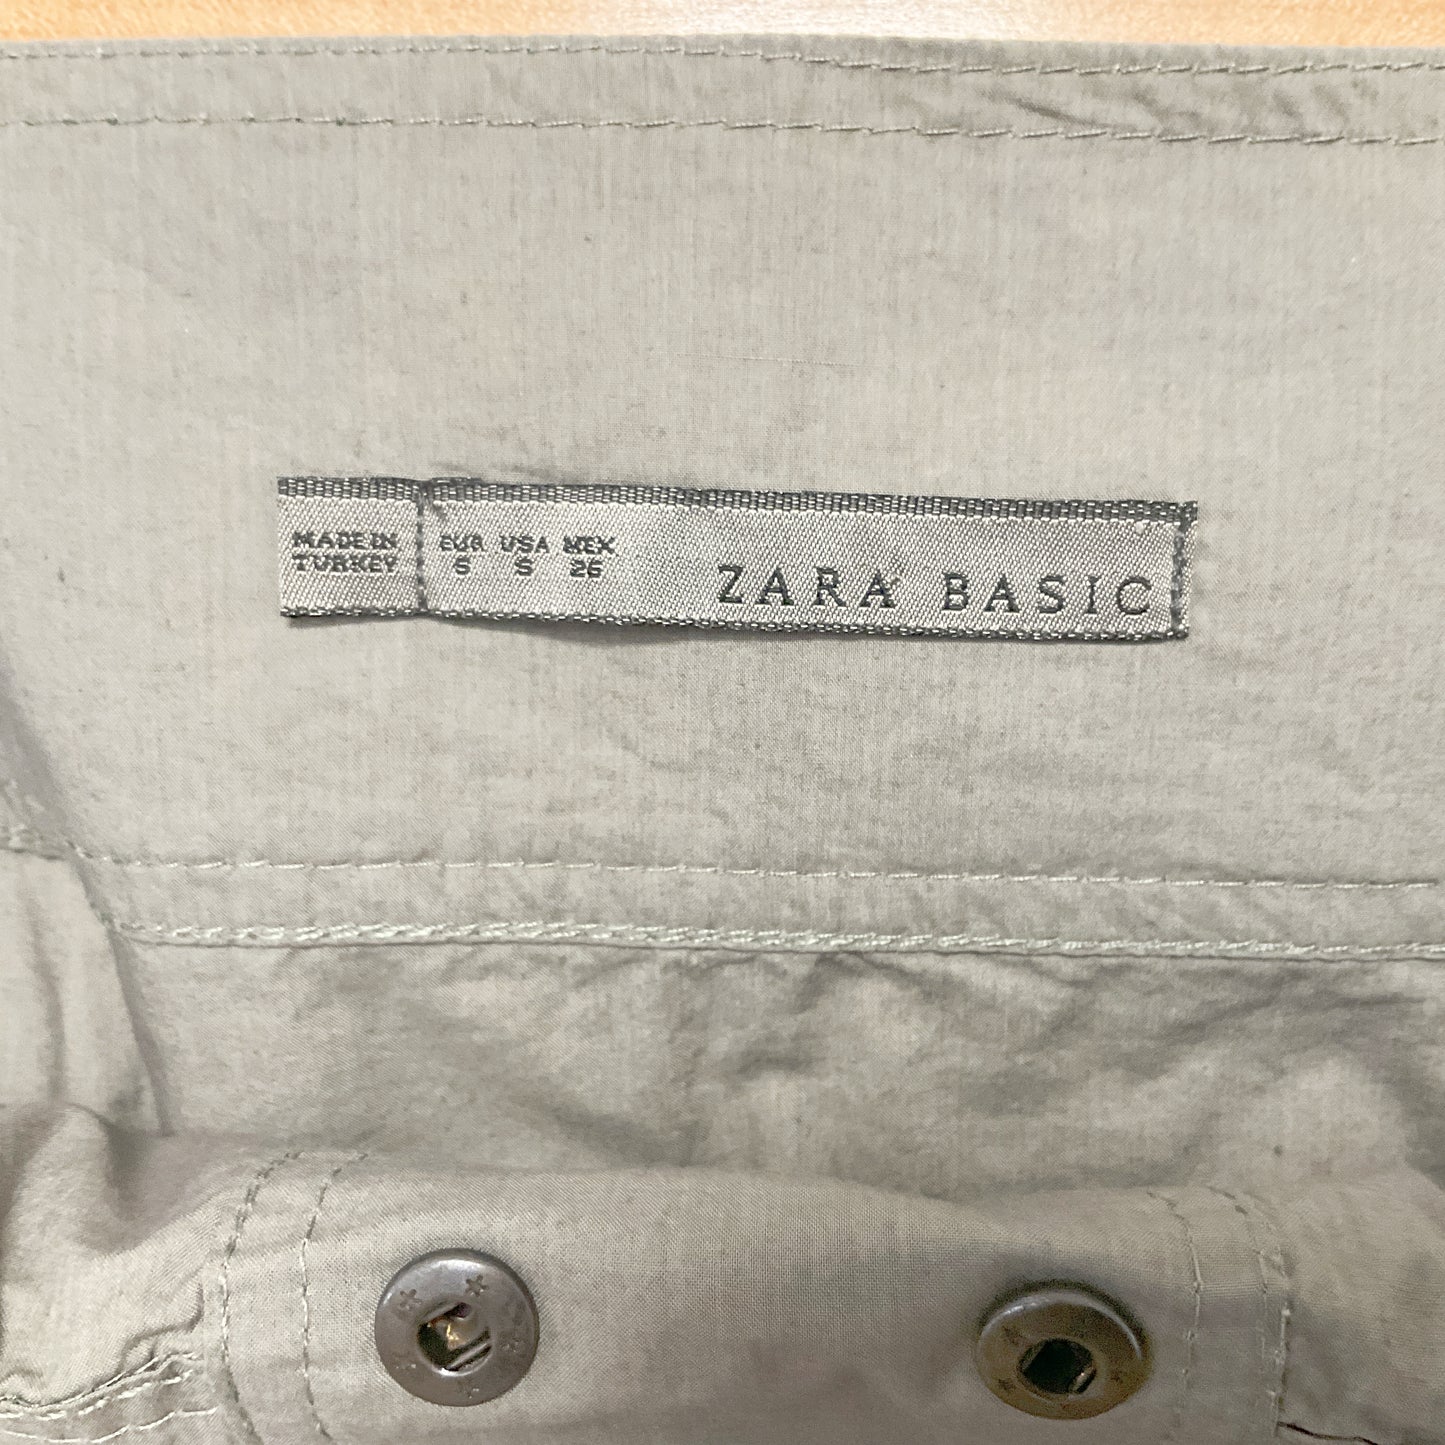 Zara Basic - Cargo Skirt